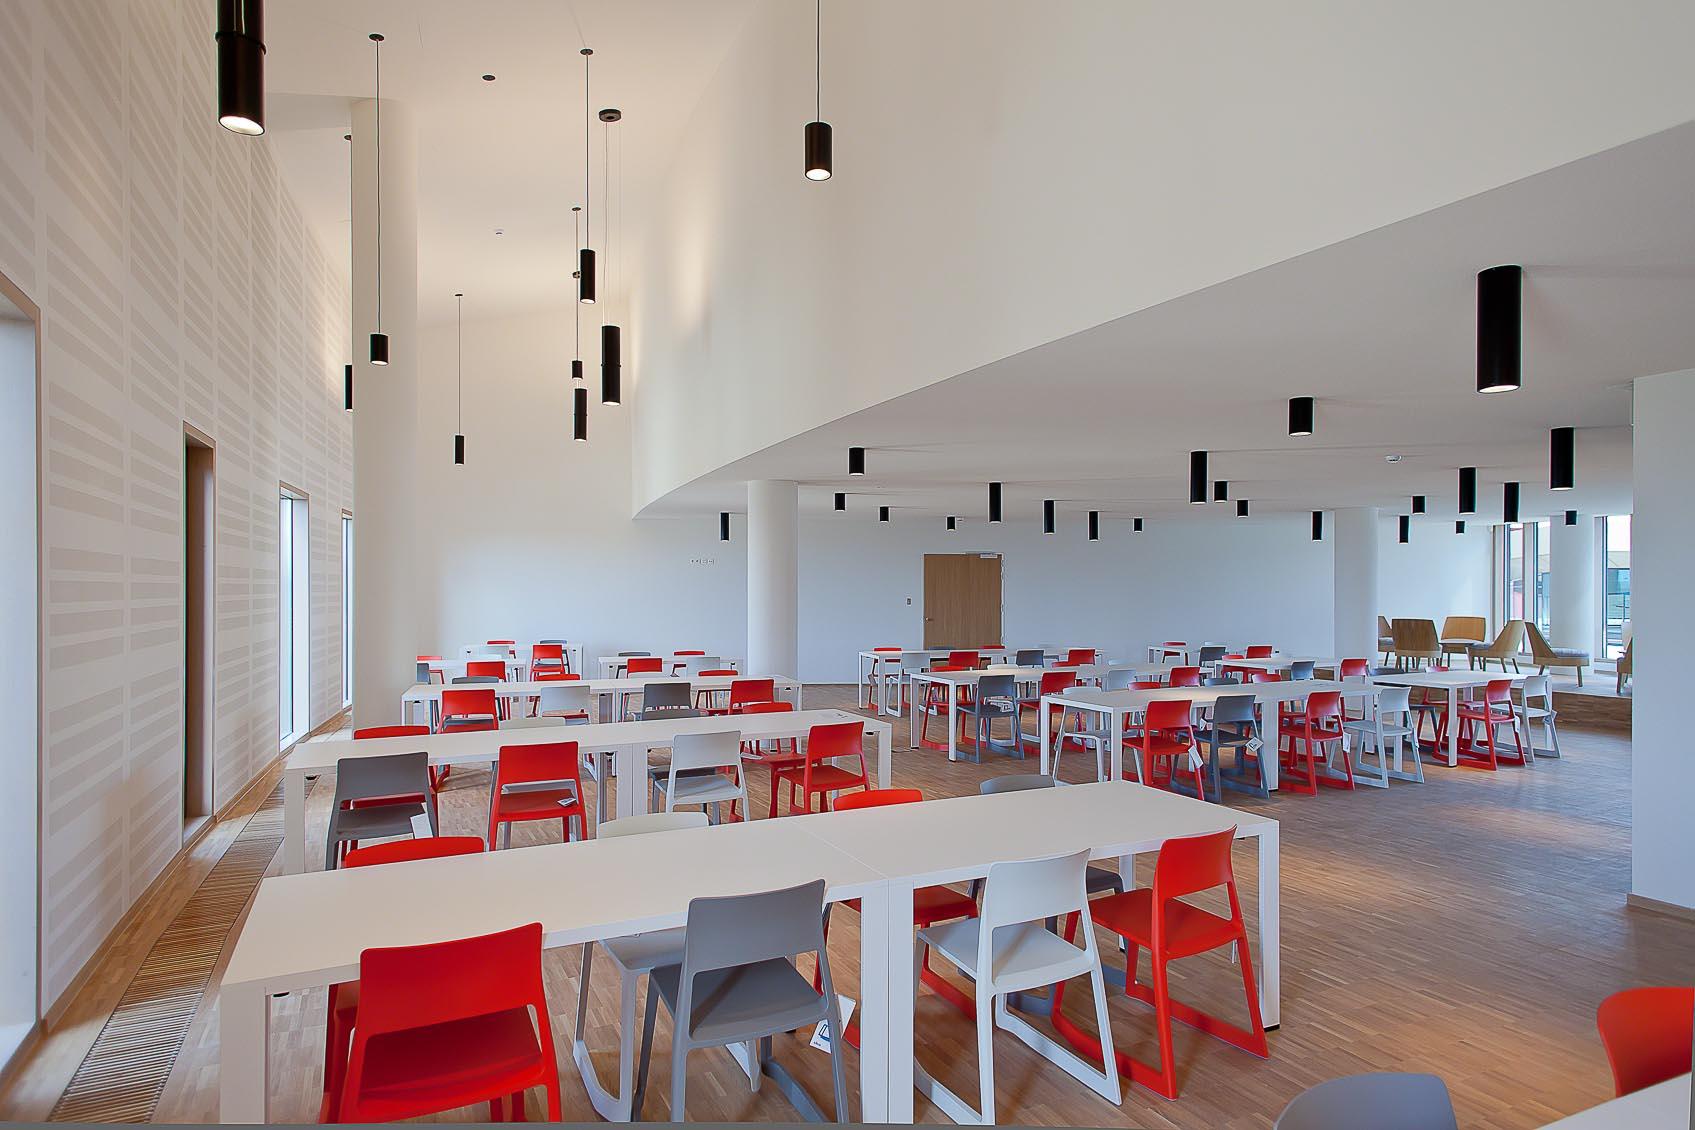 Speels architecturaal lichtconcept in wit zwart rood concept in eetzaal nac